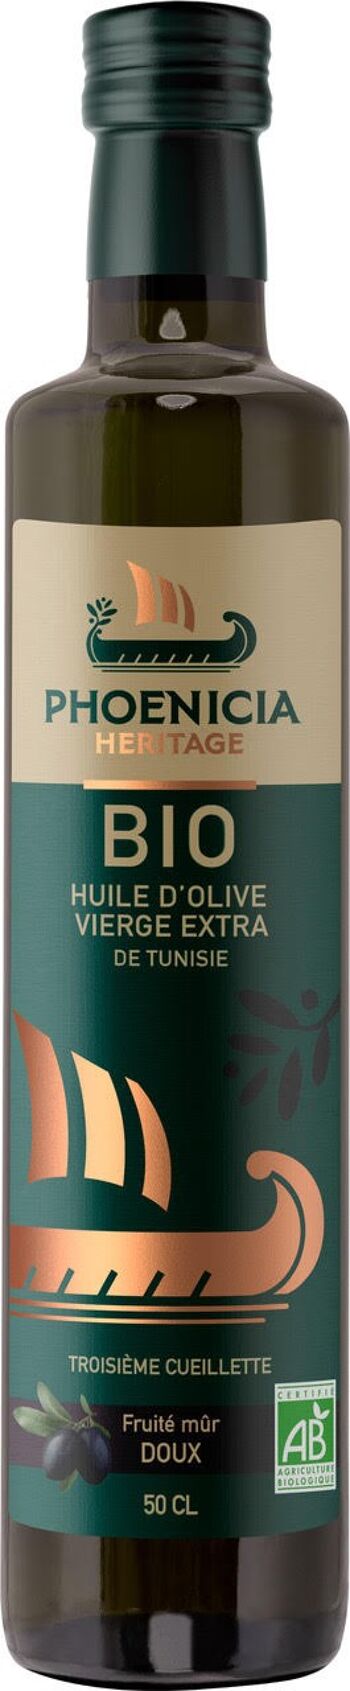 PHOENICIA HERITAGE Huile d’olive vierge Extra Biologique Fruité mûr doux 2